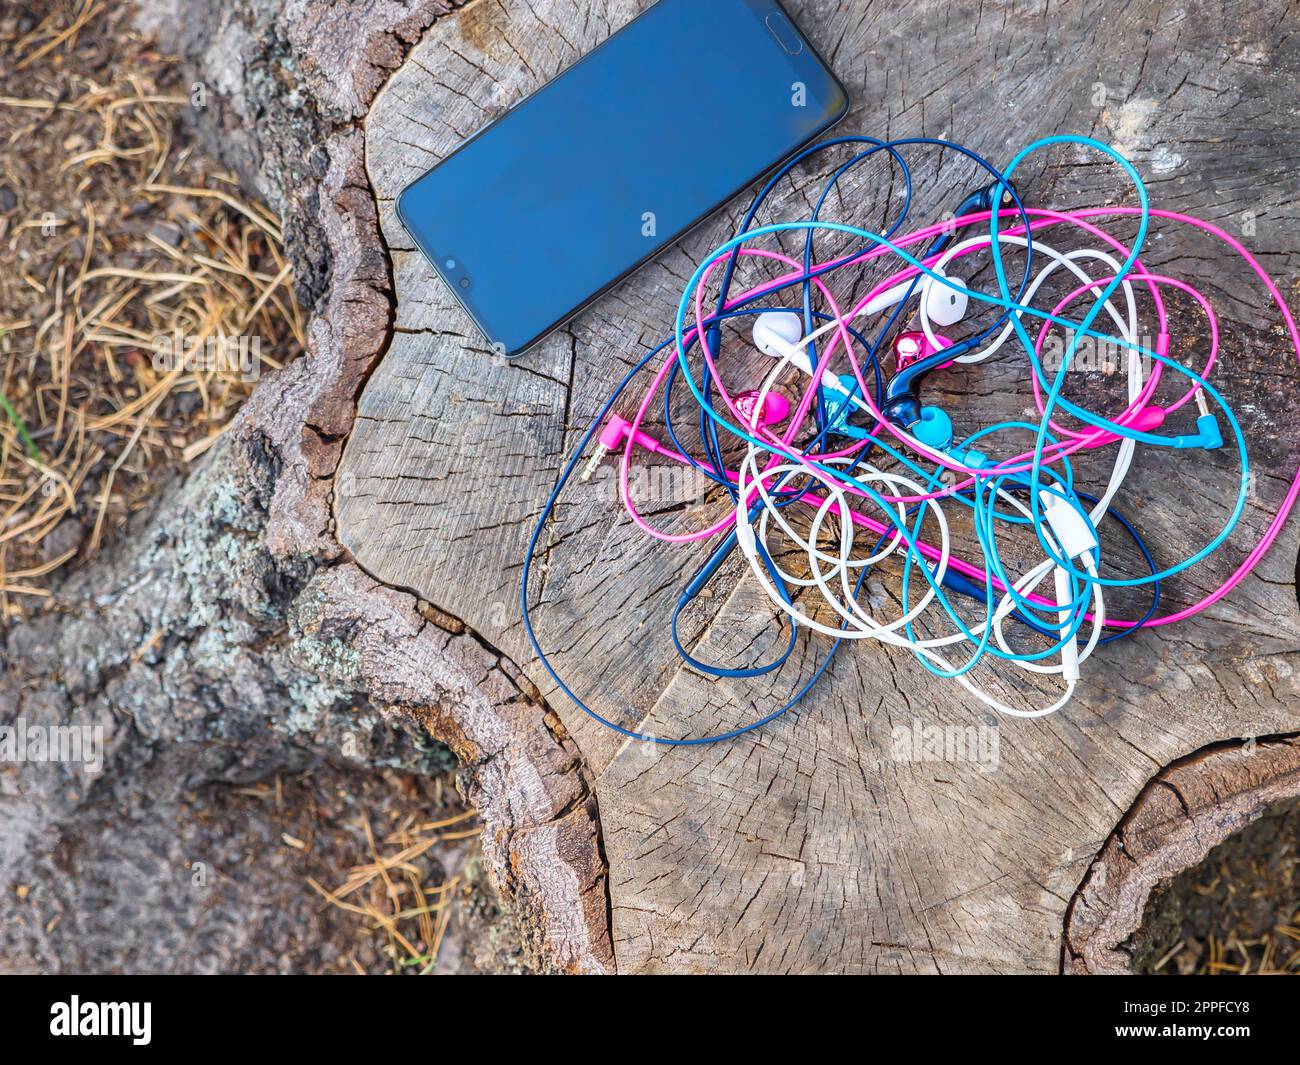 Un telefono e un nodo di quattro paia di auricolari rosa, blu, bianco e nero con fili intrecciati in un problema caotico e disordinato vicino a uno smartphone su un moncone. Foto Stock